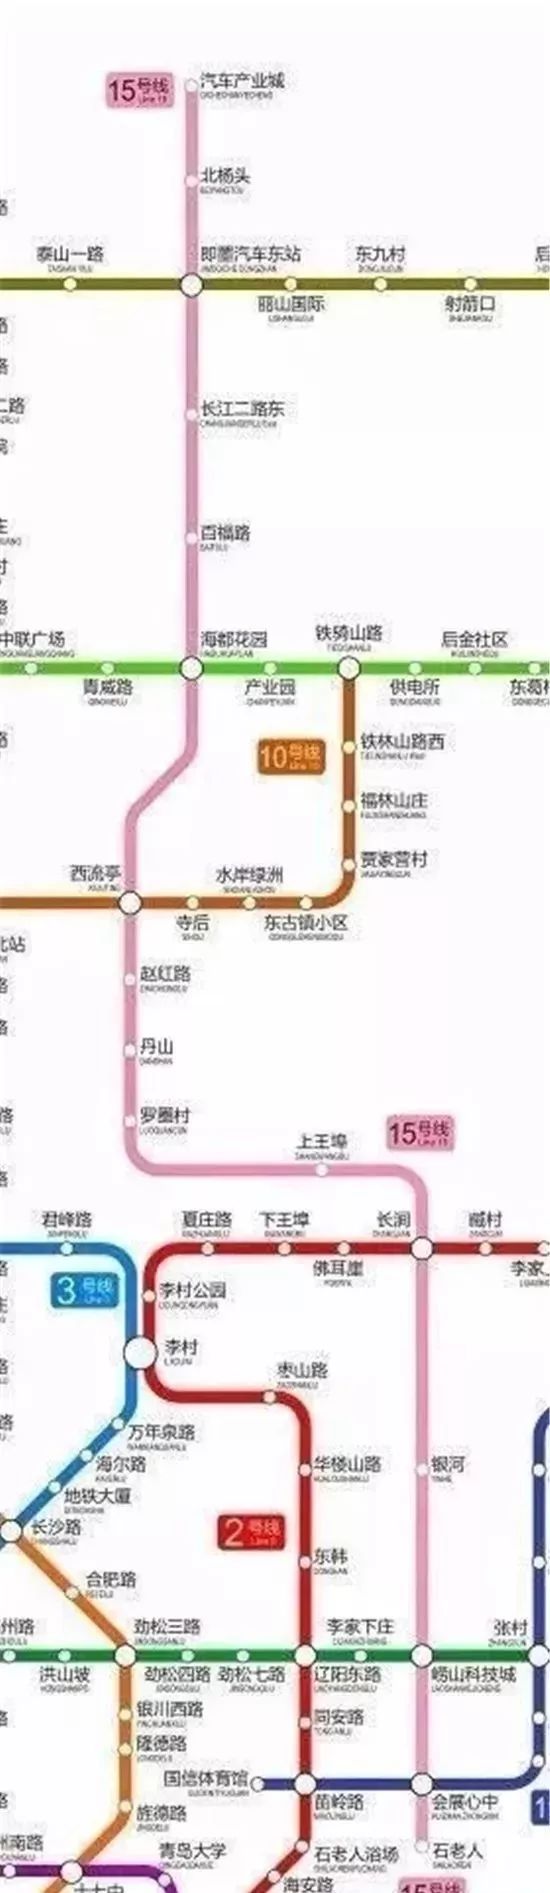 地铁号线,是连接崂山-李沧-城阳-即墨的有一条南北干线.